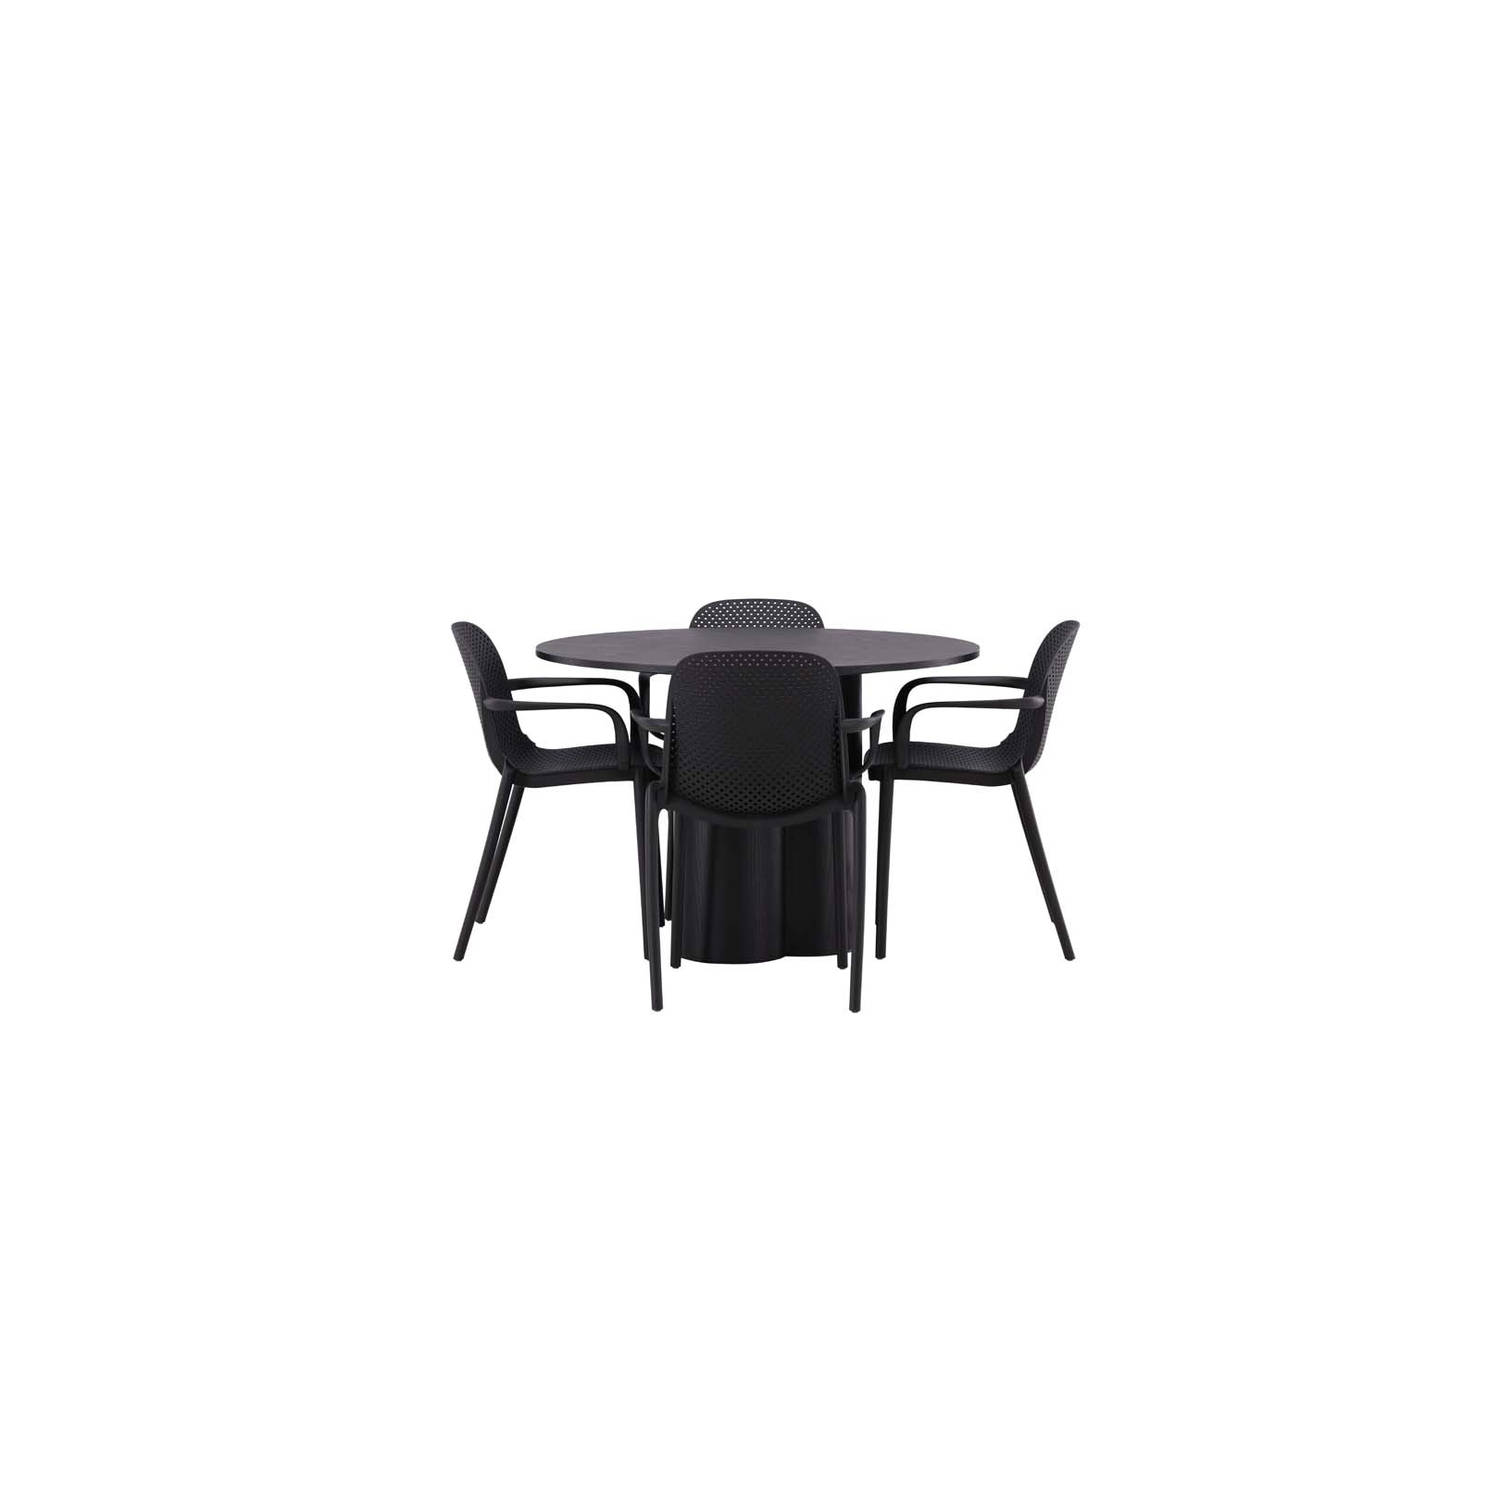 Olivia eethoek tafel zwart en 4 baltimore stoelen zwart.